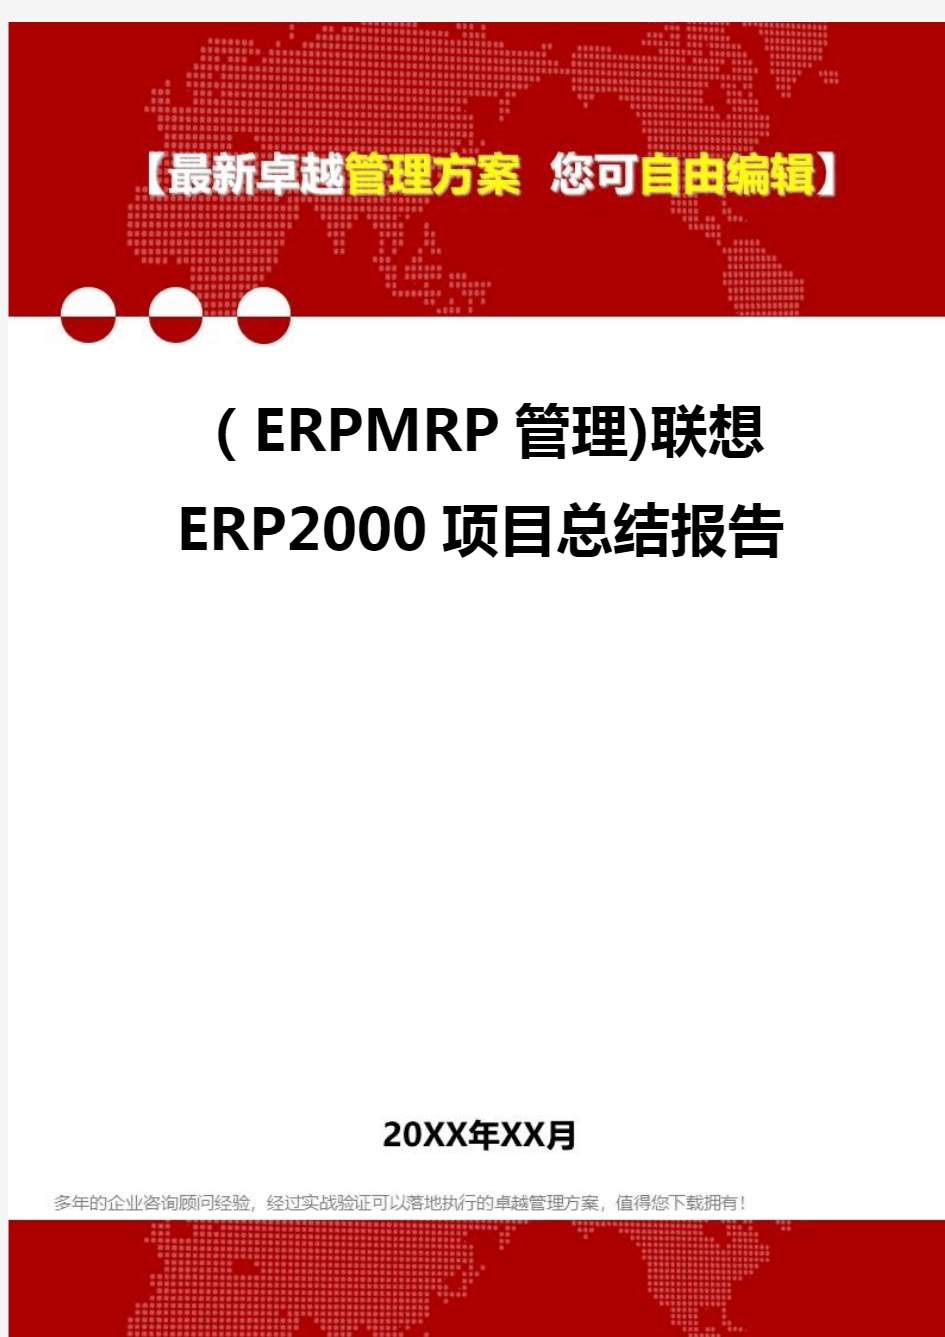 2020年(ERPMRP管理)联想ERP2000项目总结报告